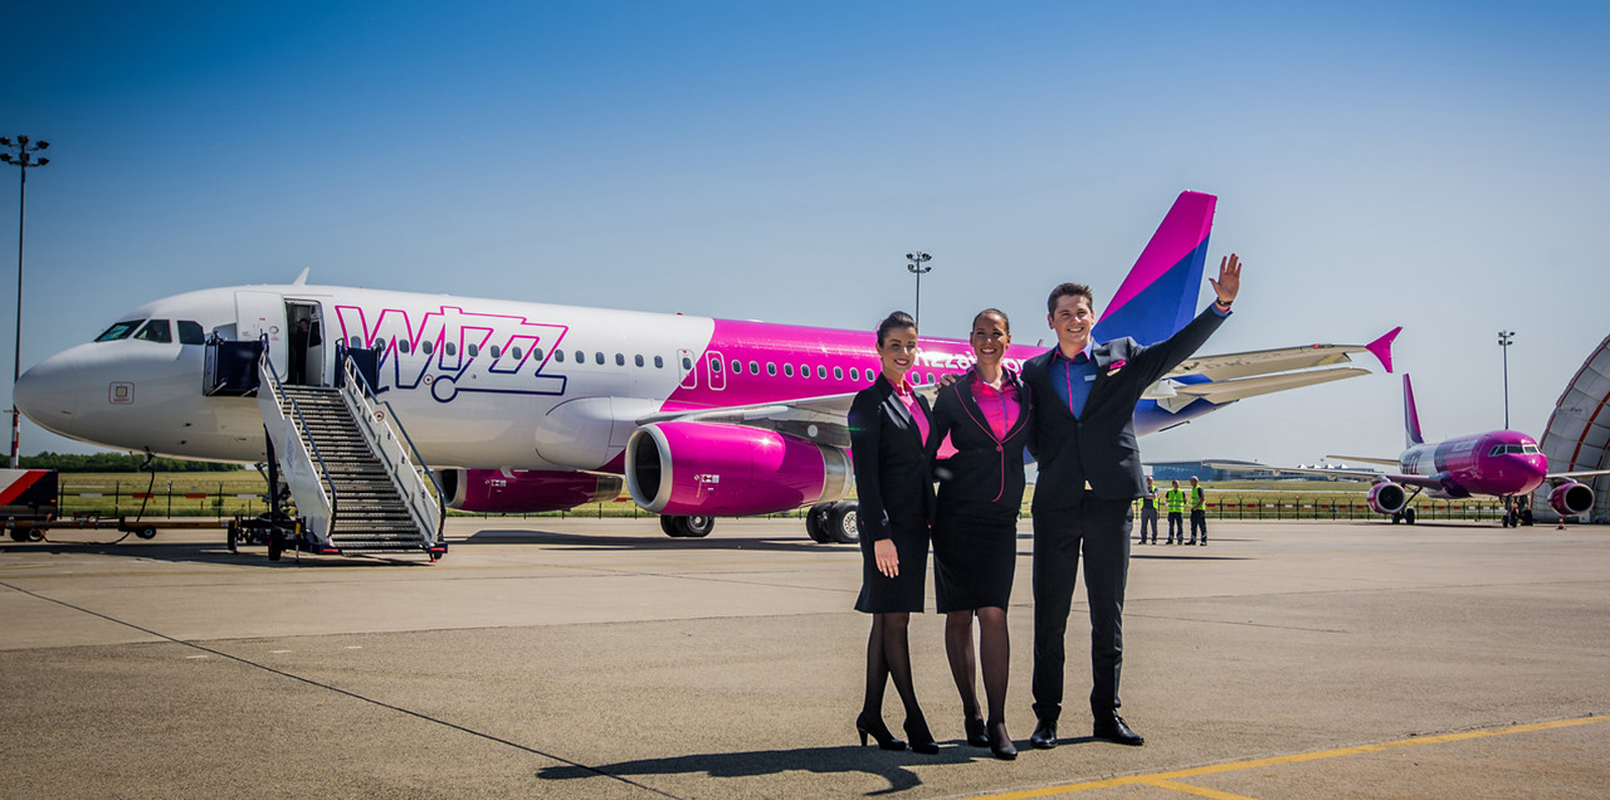 Wizz air авиакомпания сайт. Wizz Air самолеты. Венгерская авиакомпания Wizzair. Wizz Air lowcoster. Авиакомпания Wizz Air полет.